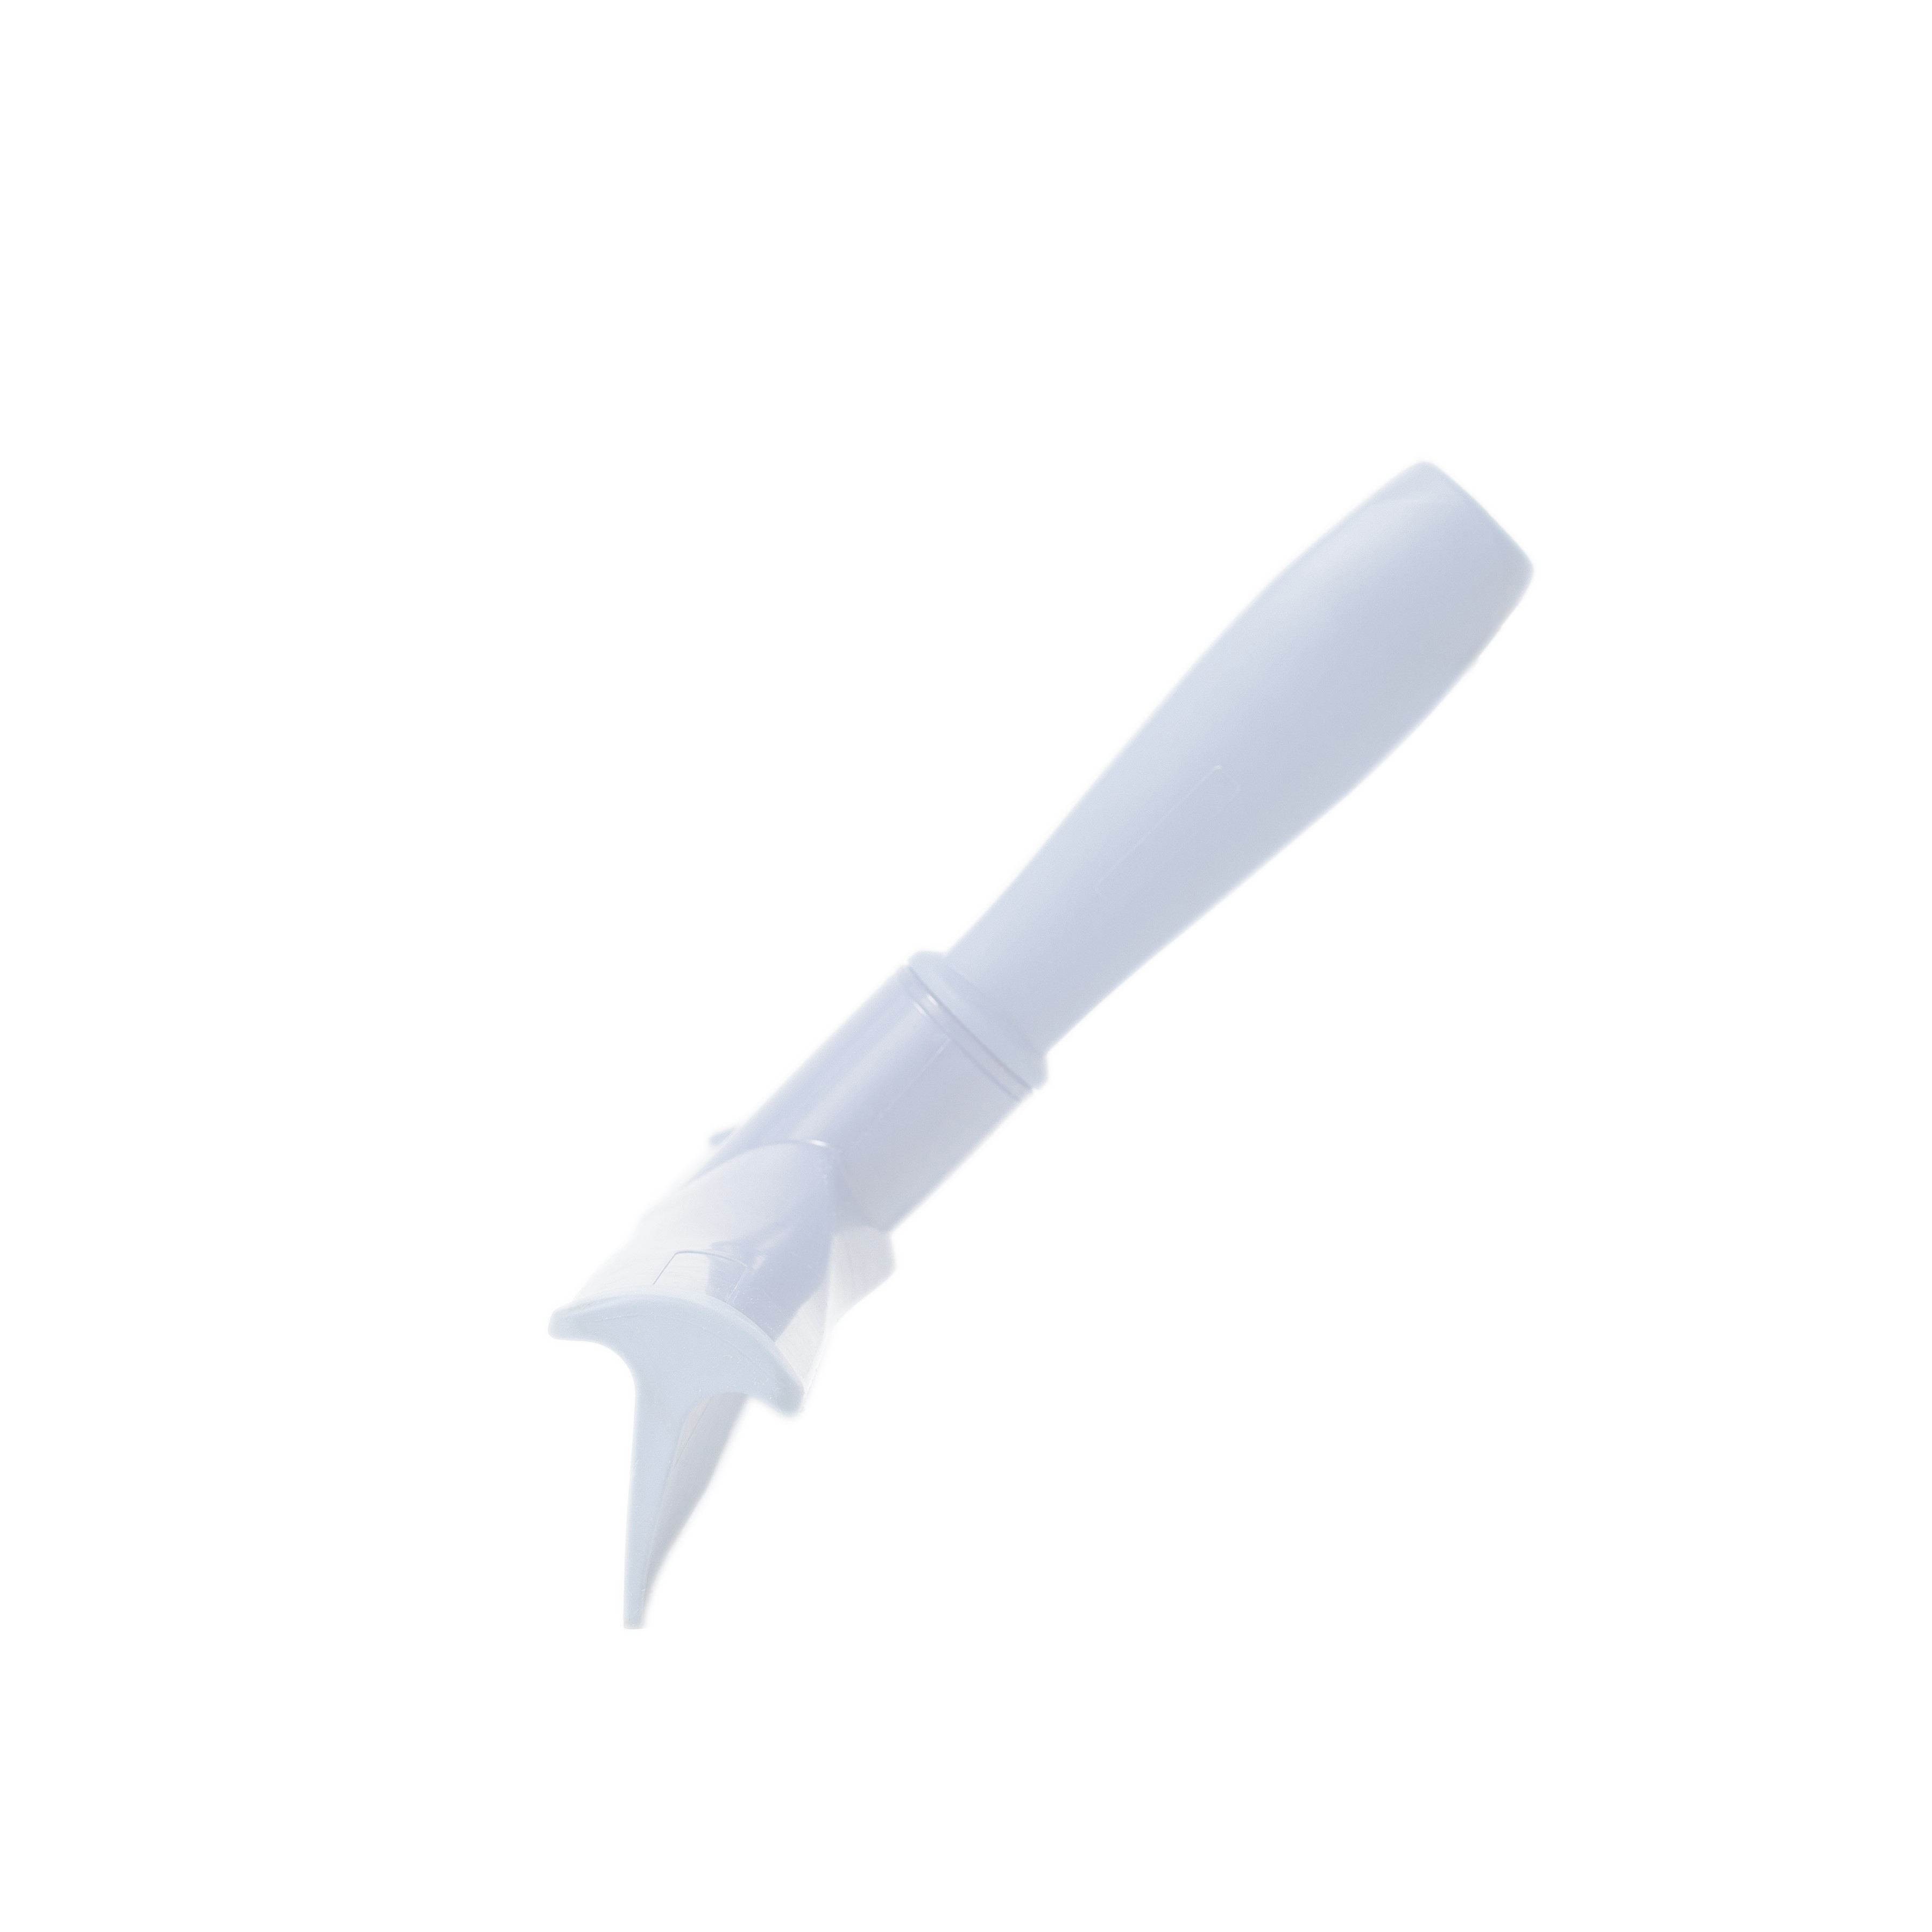 Сгон HACCPER сверхгигиеничный ручной однолезвенный с мини-рукояткой, 300 мм, белый